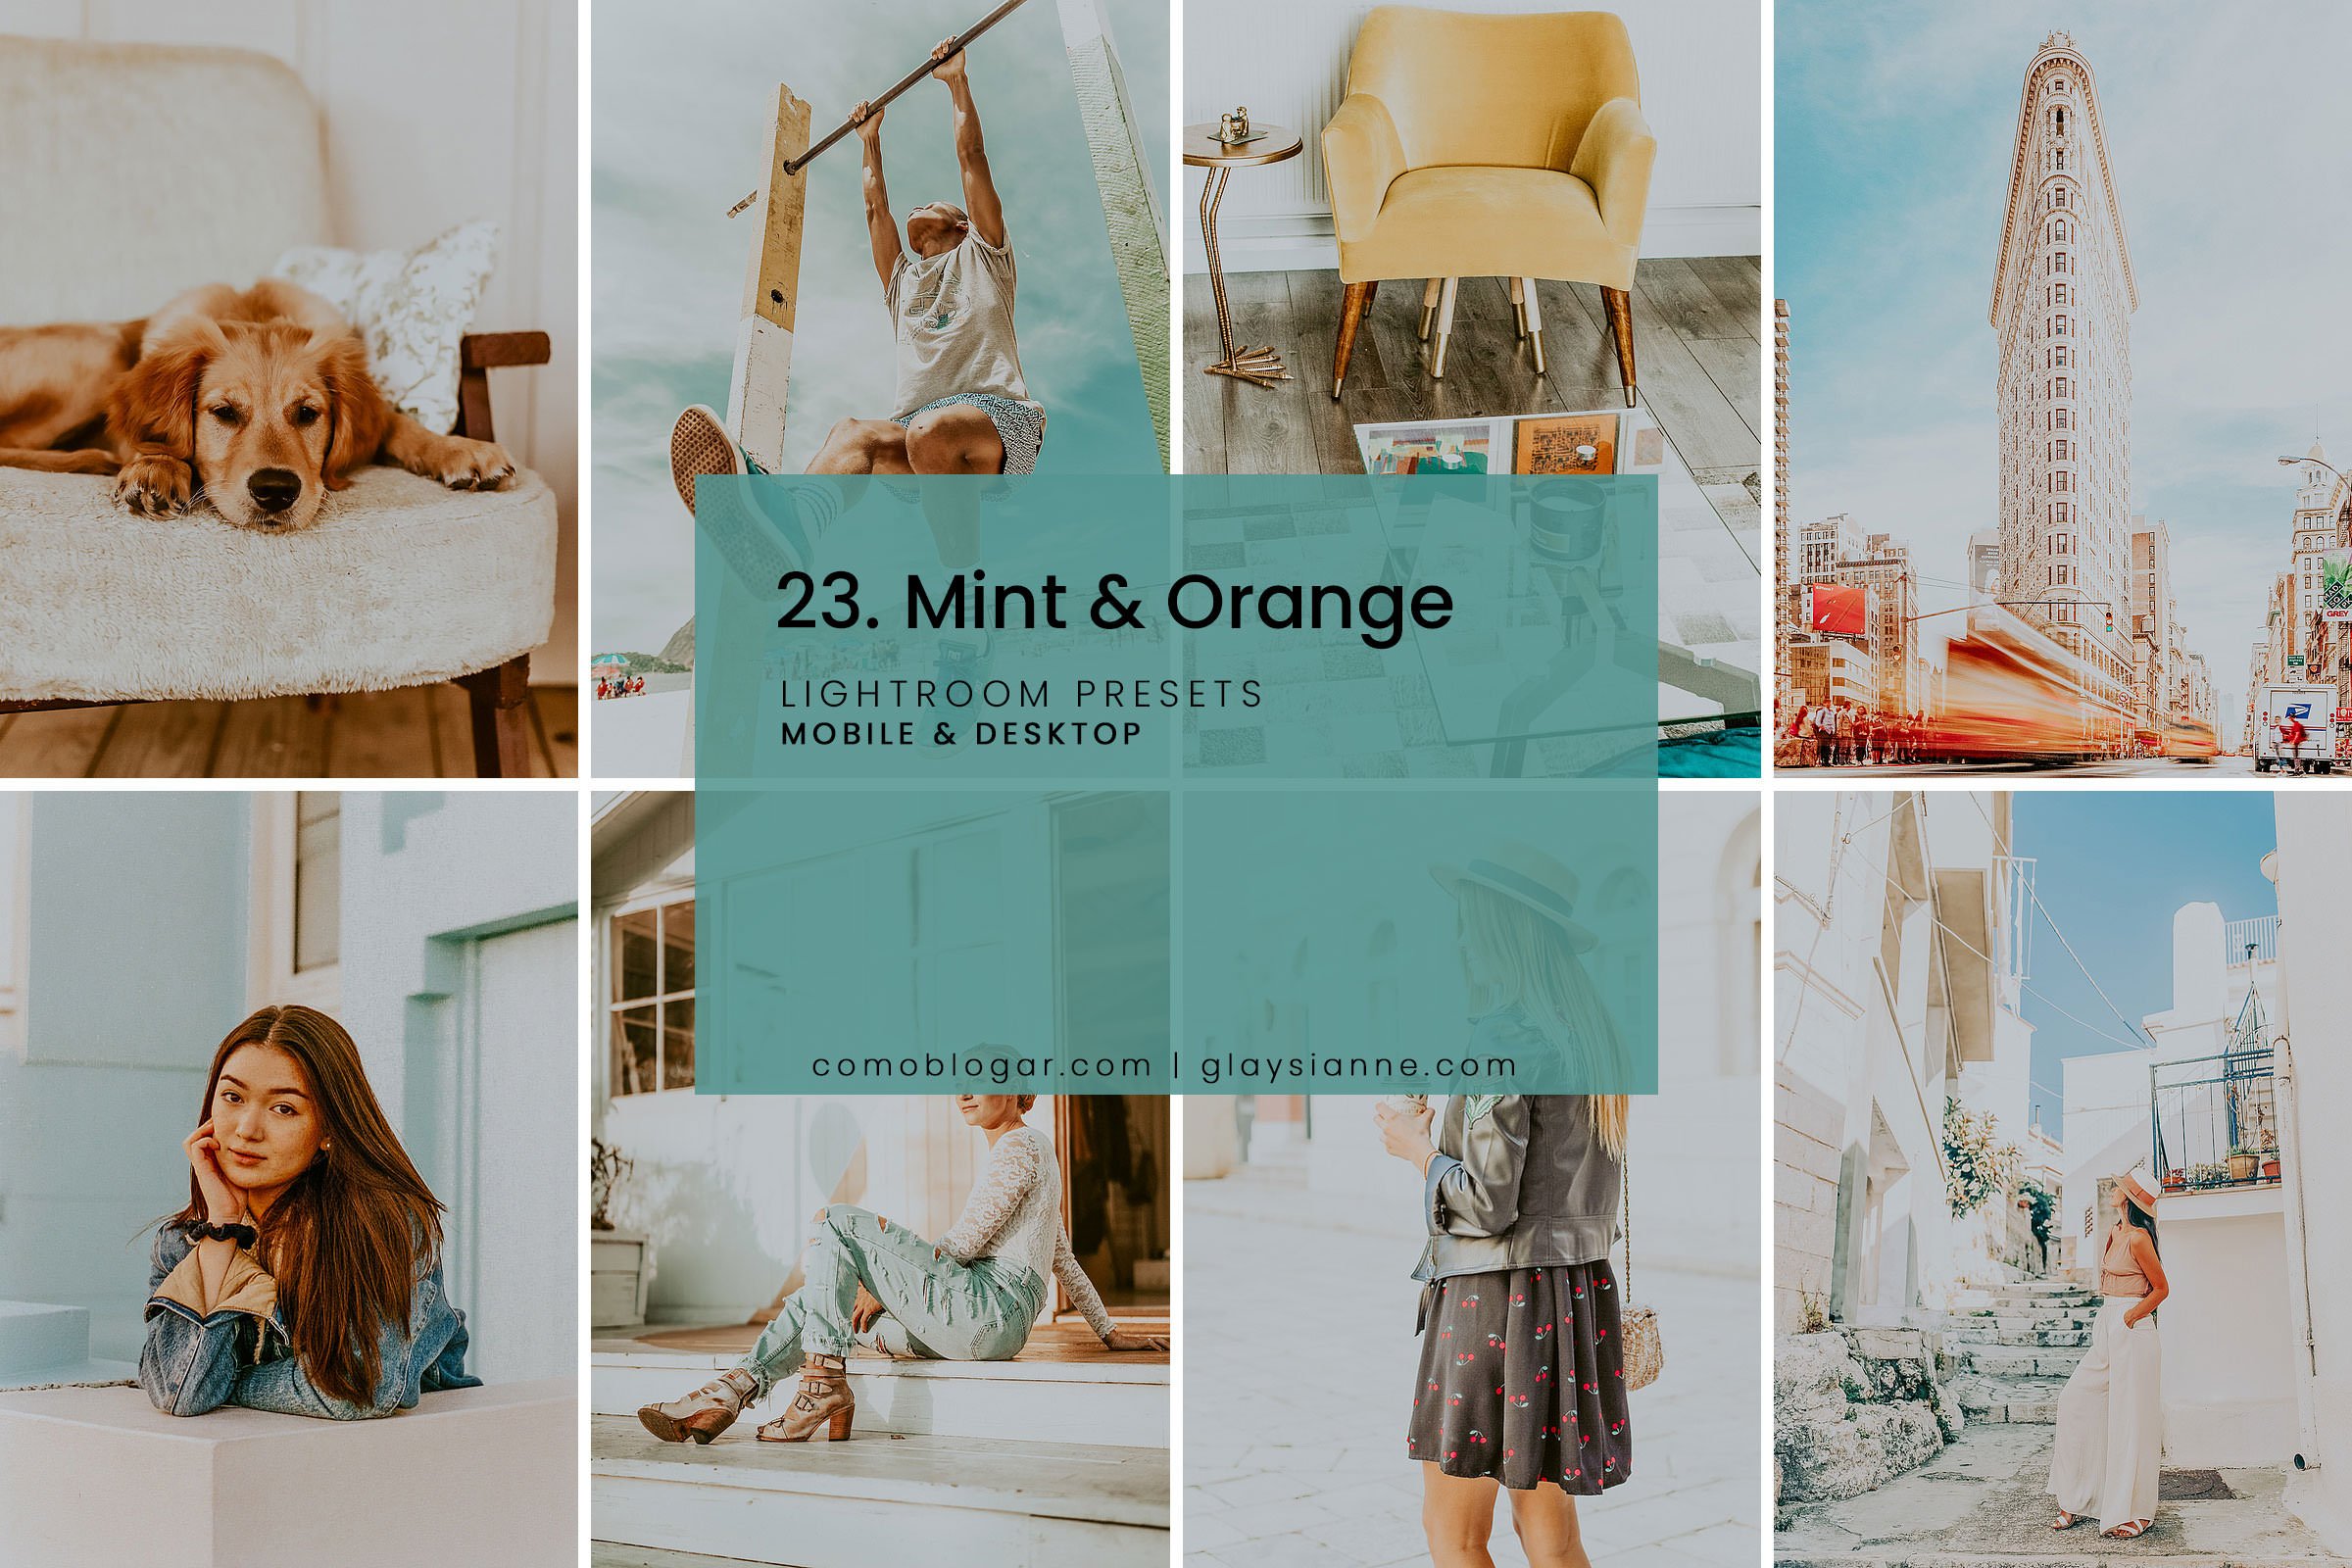 23. Mint & Orangecover image.